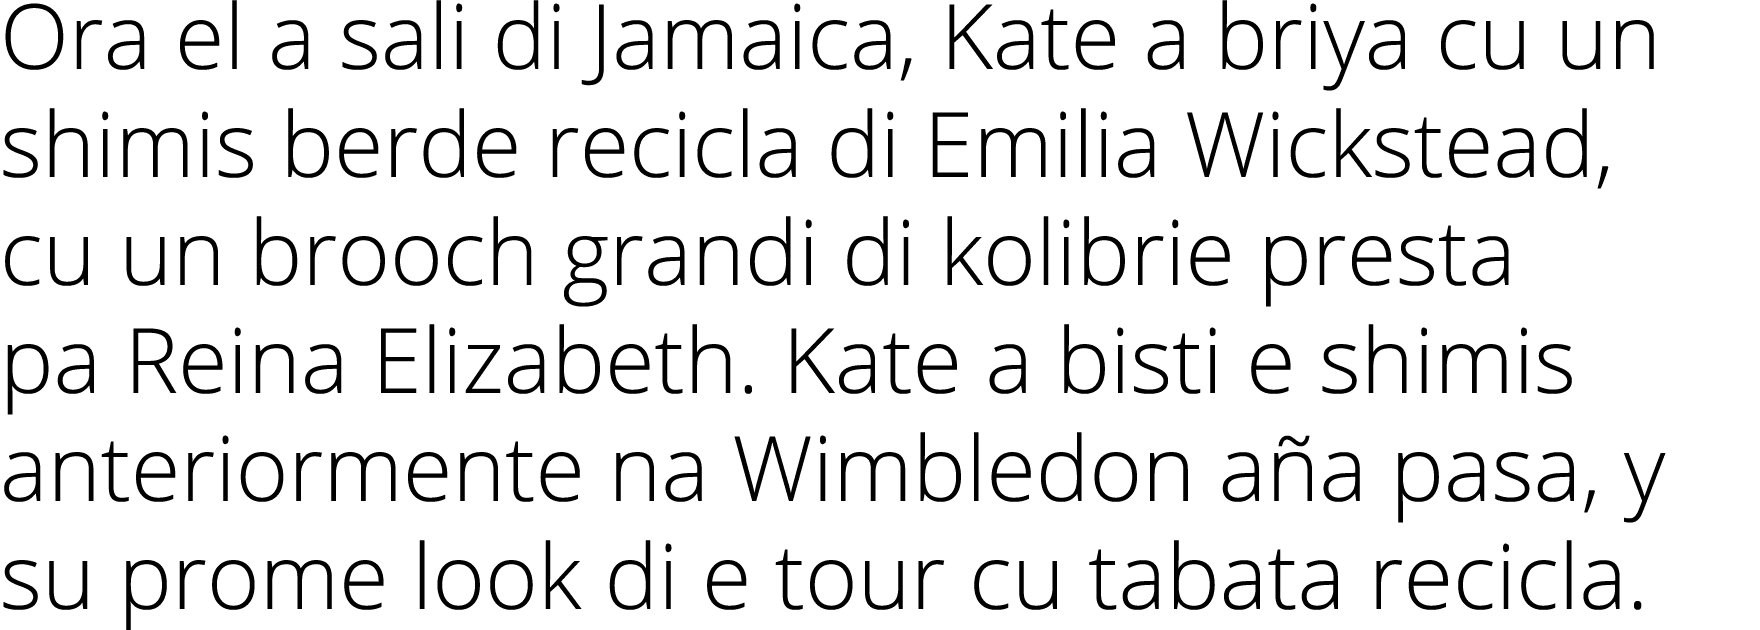 Ora el a sali di Jamaica, Kate a briya cu un shimis berde recicla di Emilia Wickstead, cu un brooch grandi di kolibri   